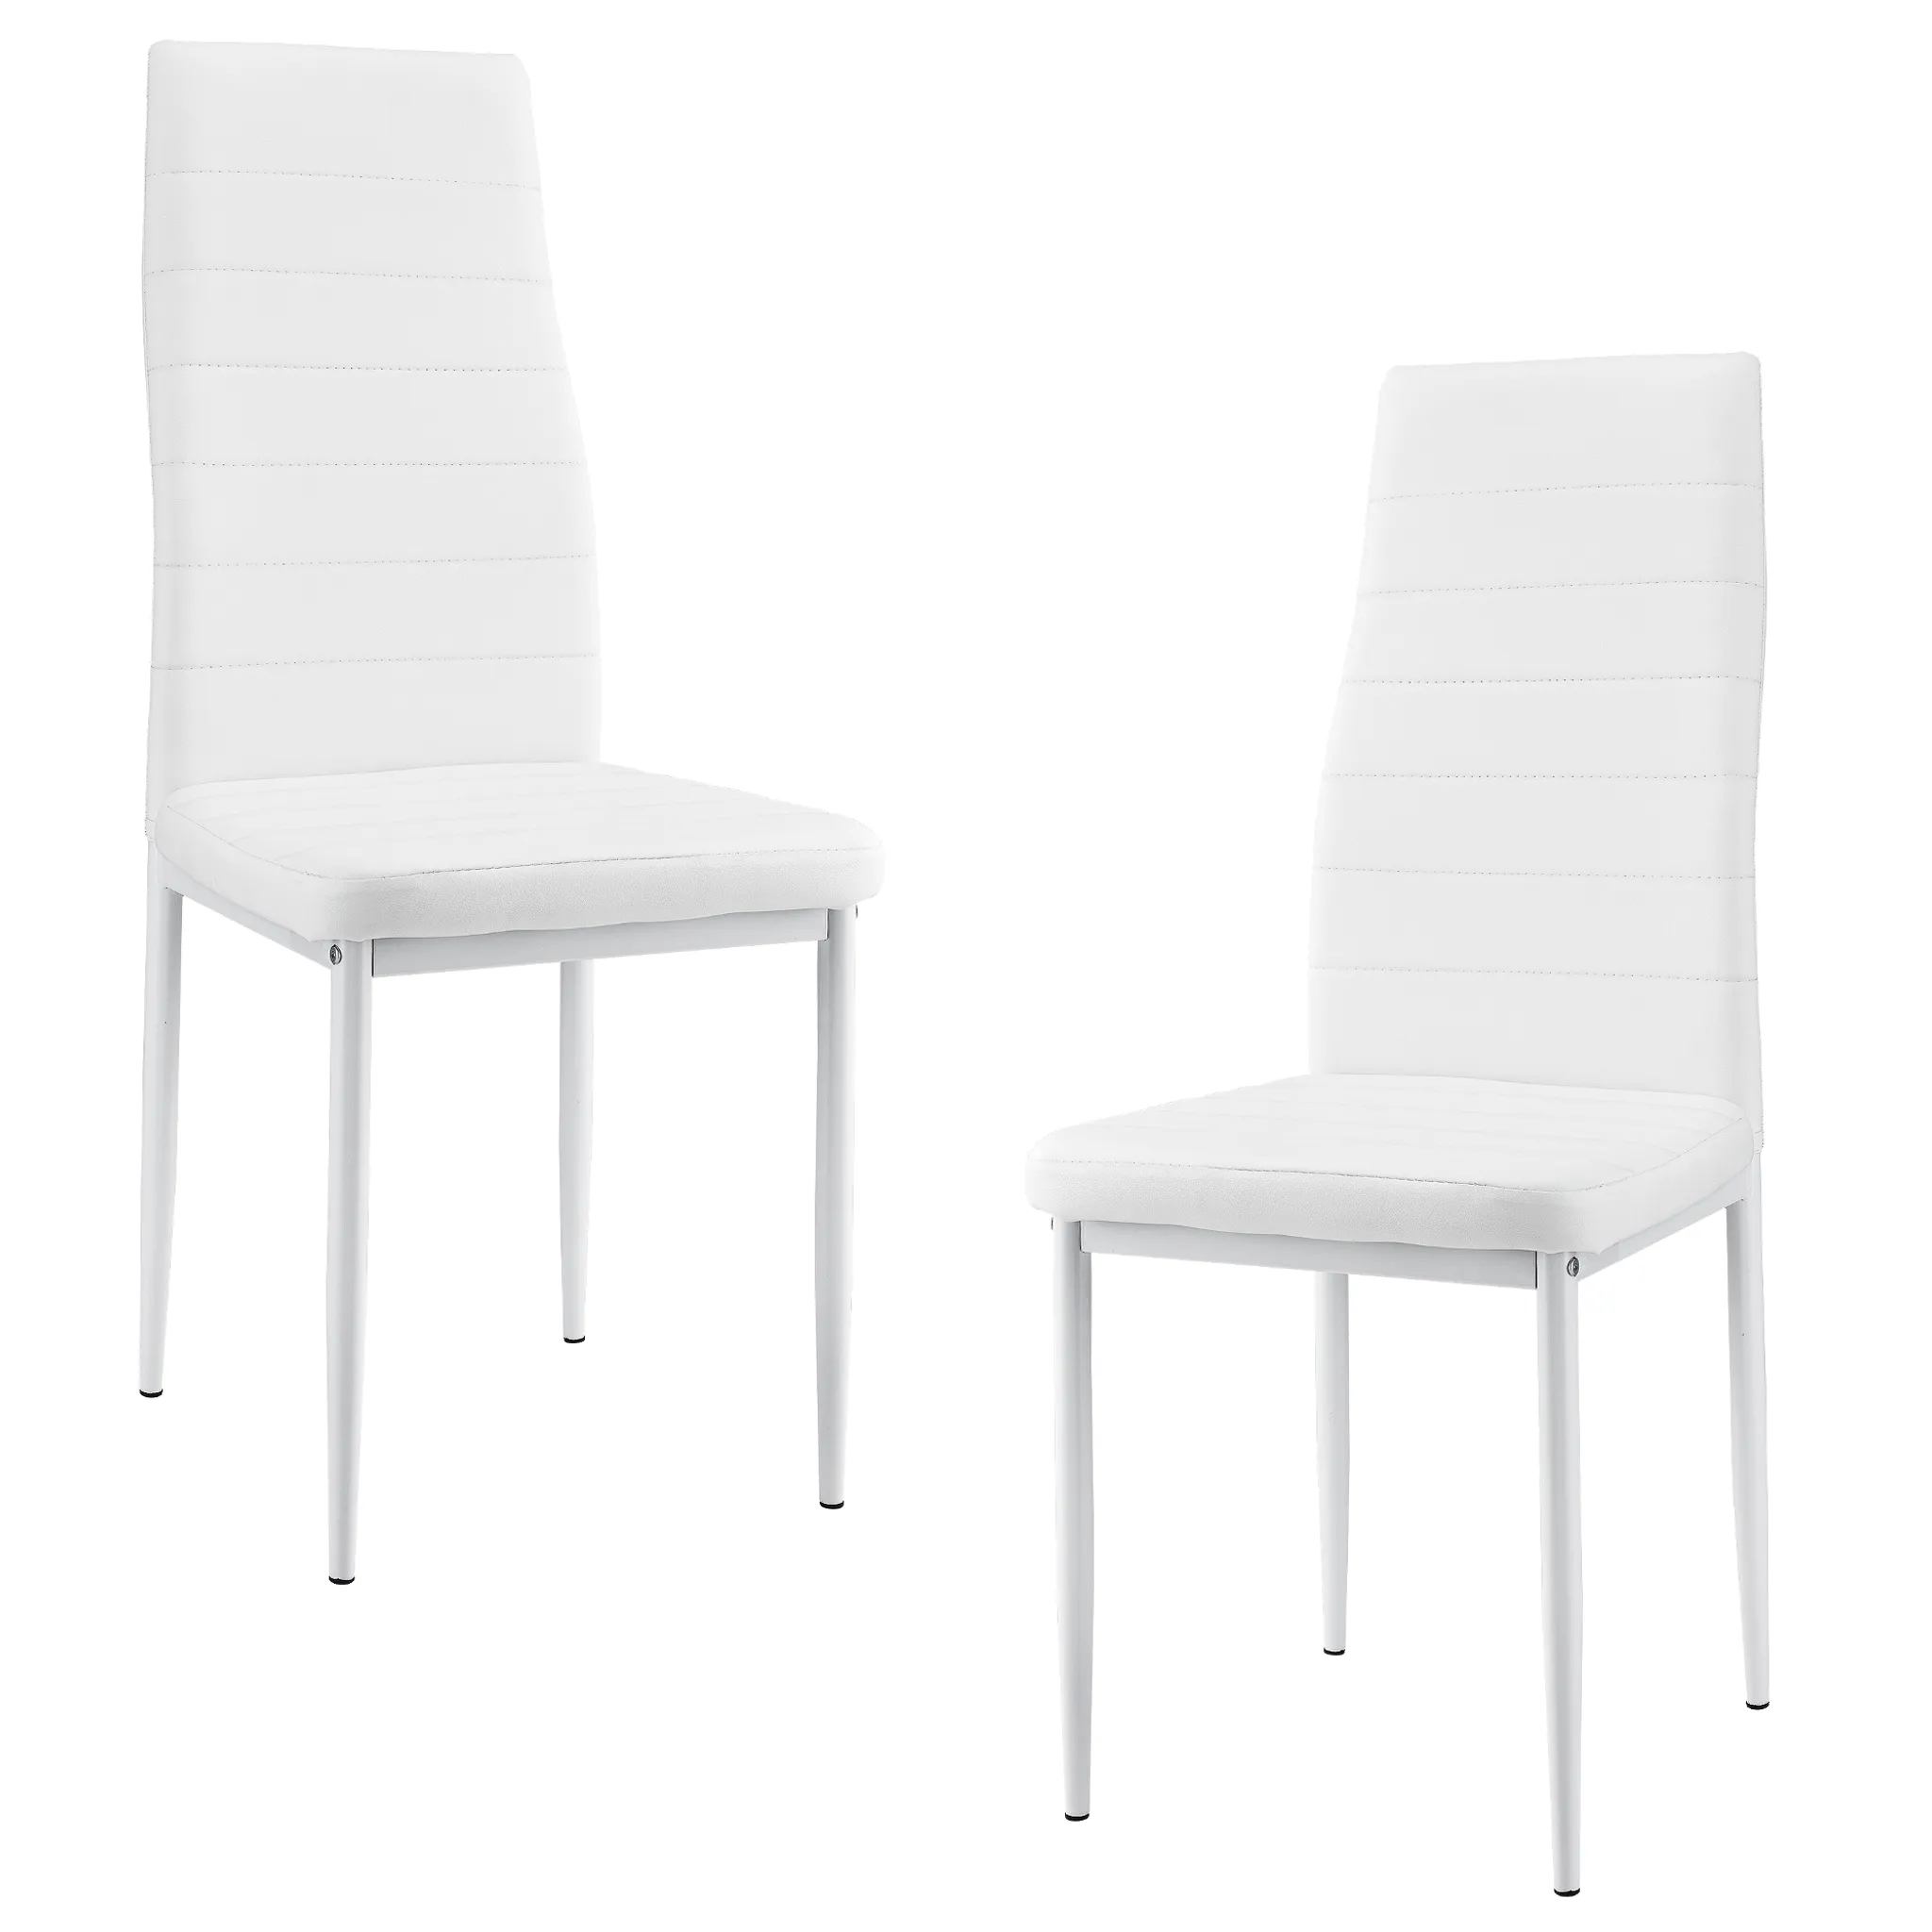 2er-set stühle weiß hochlehner esszimmer | kaufland.de